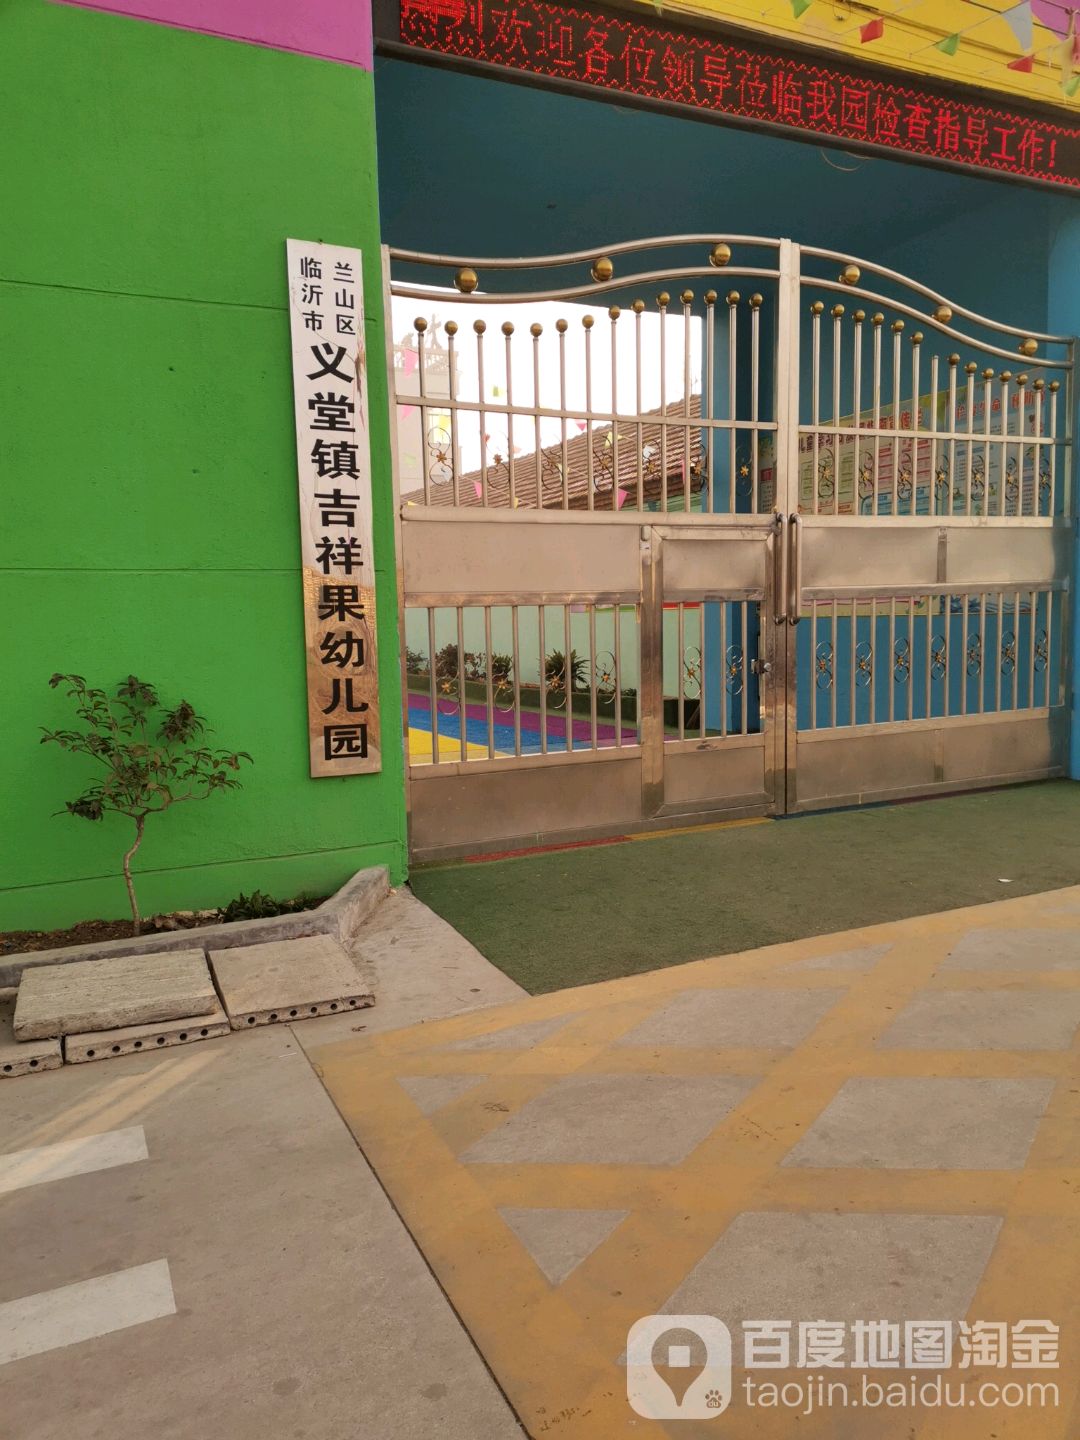 临沂市兰山区义堂镇吉祥果幼儿园的图片